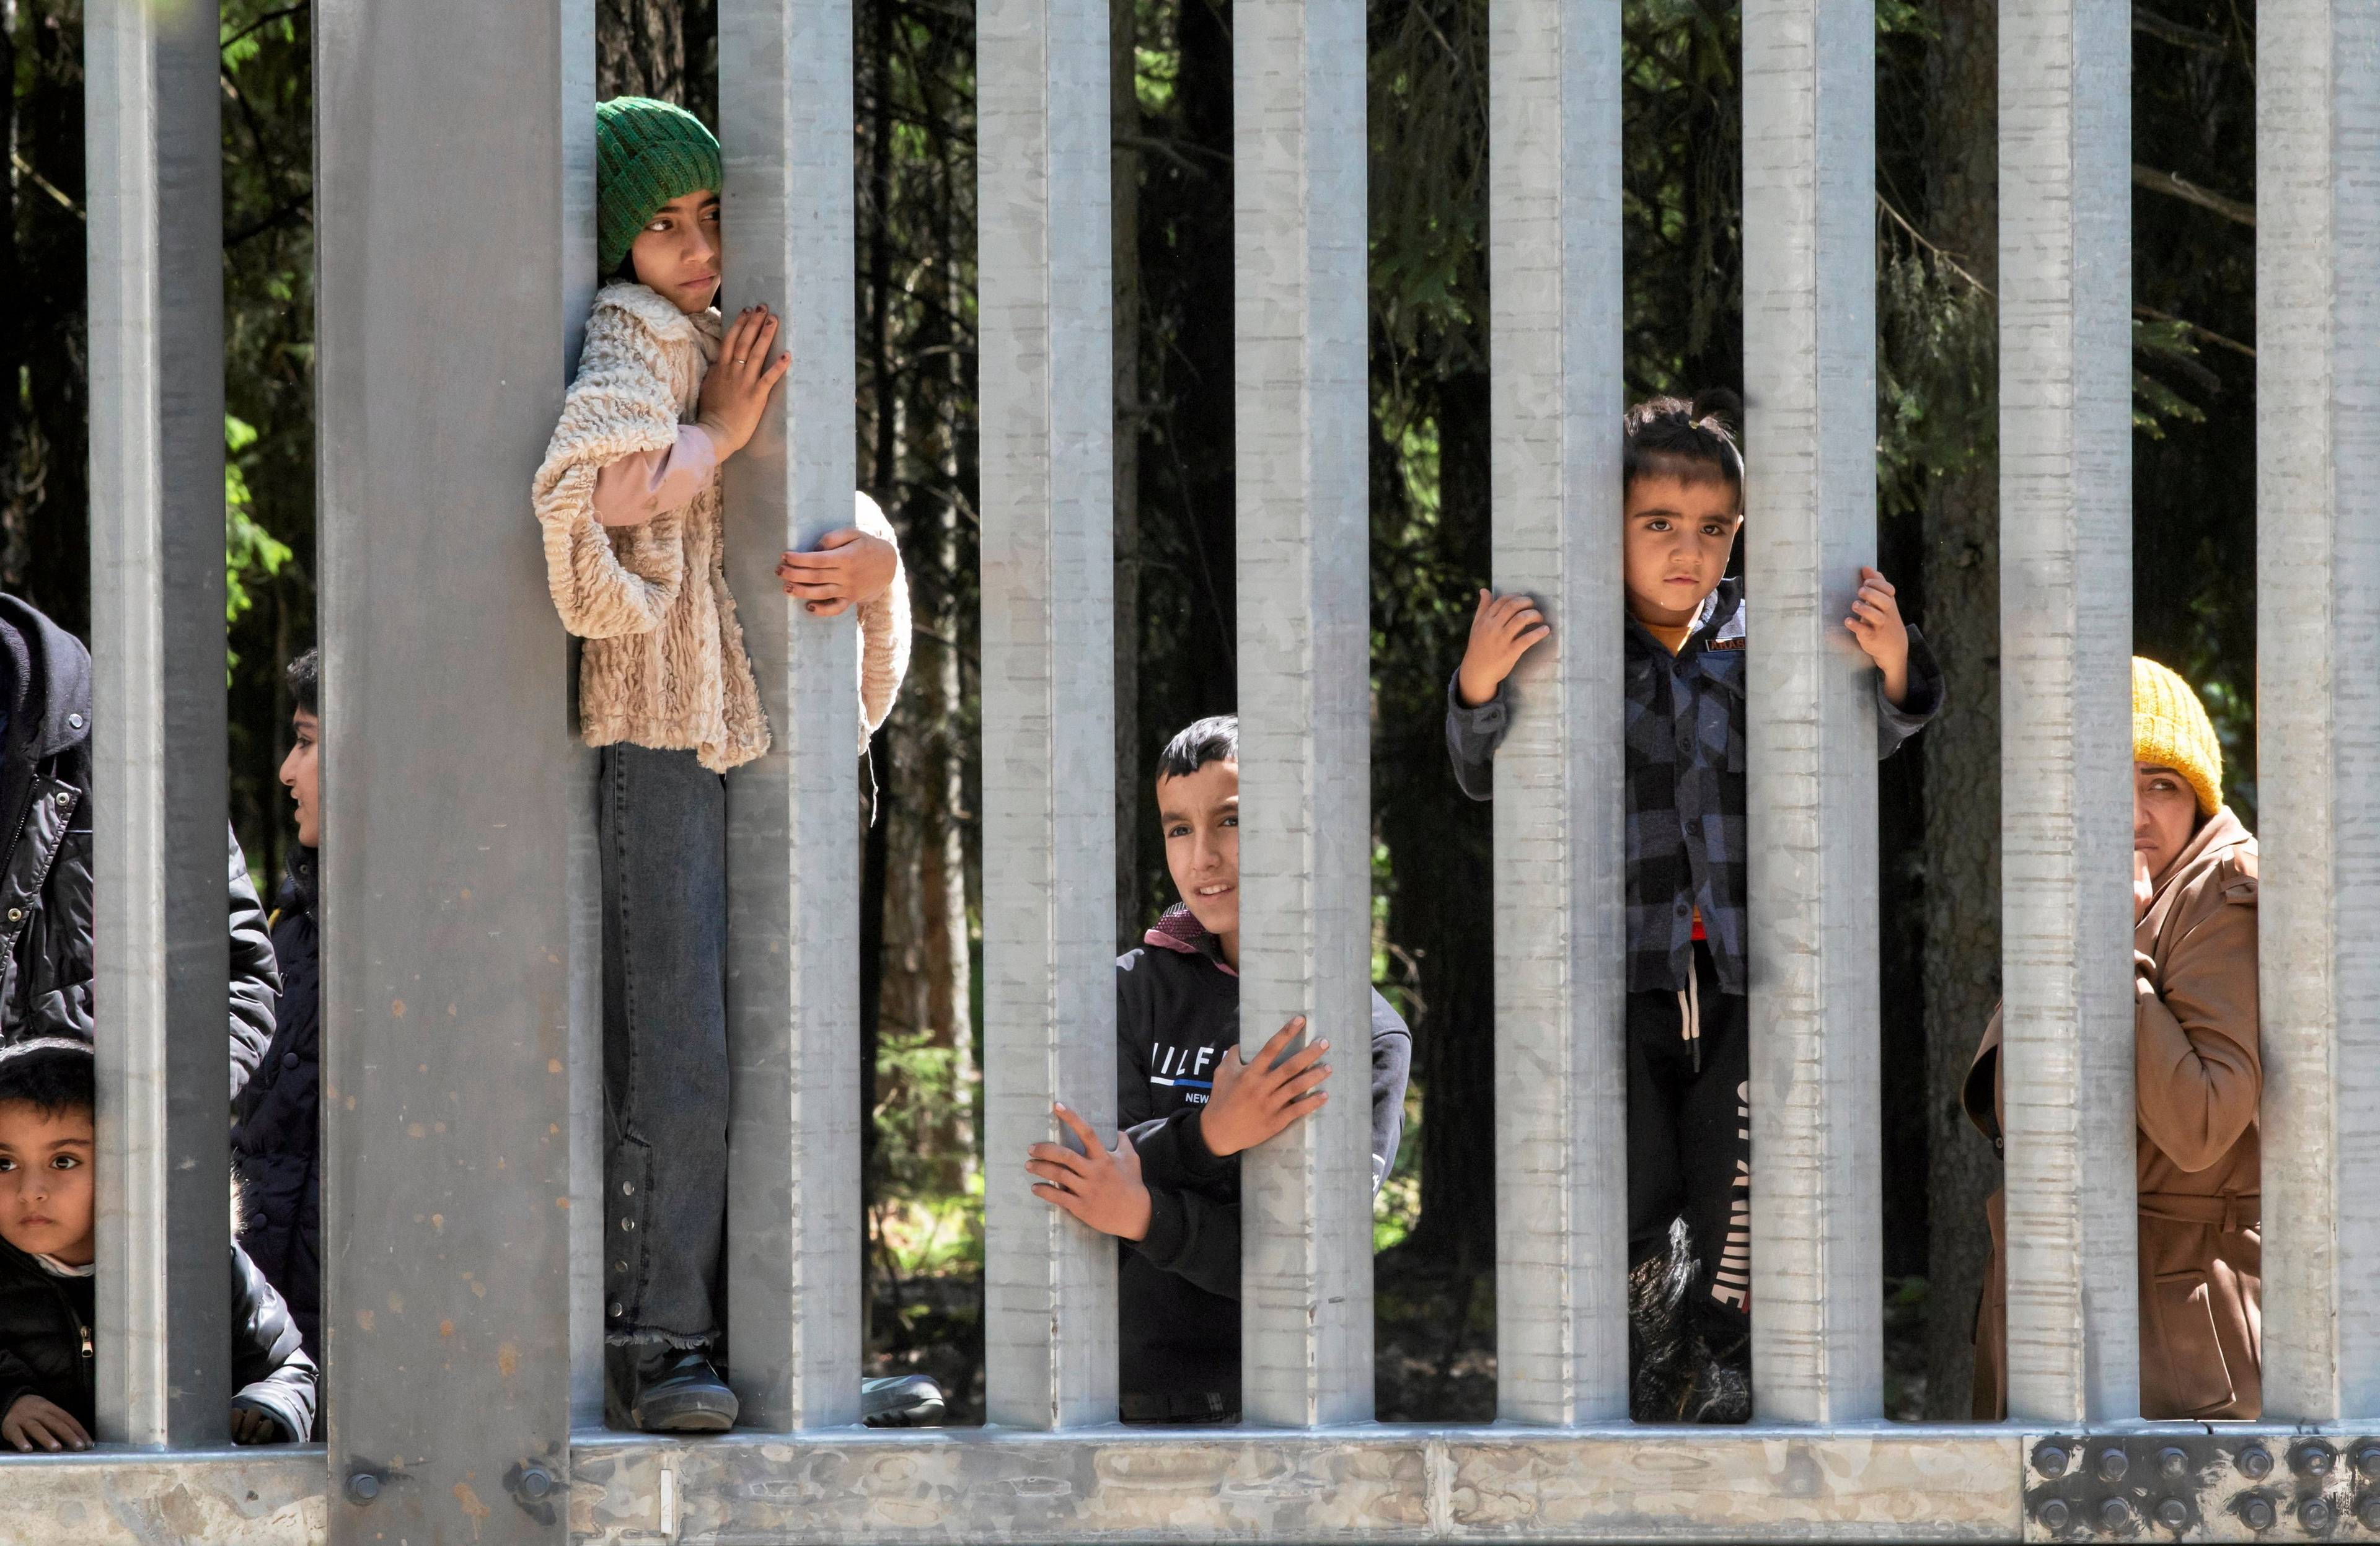 Foto zapory na granicy, między jej prętami widać grupę osób, dorosłych i dzieci